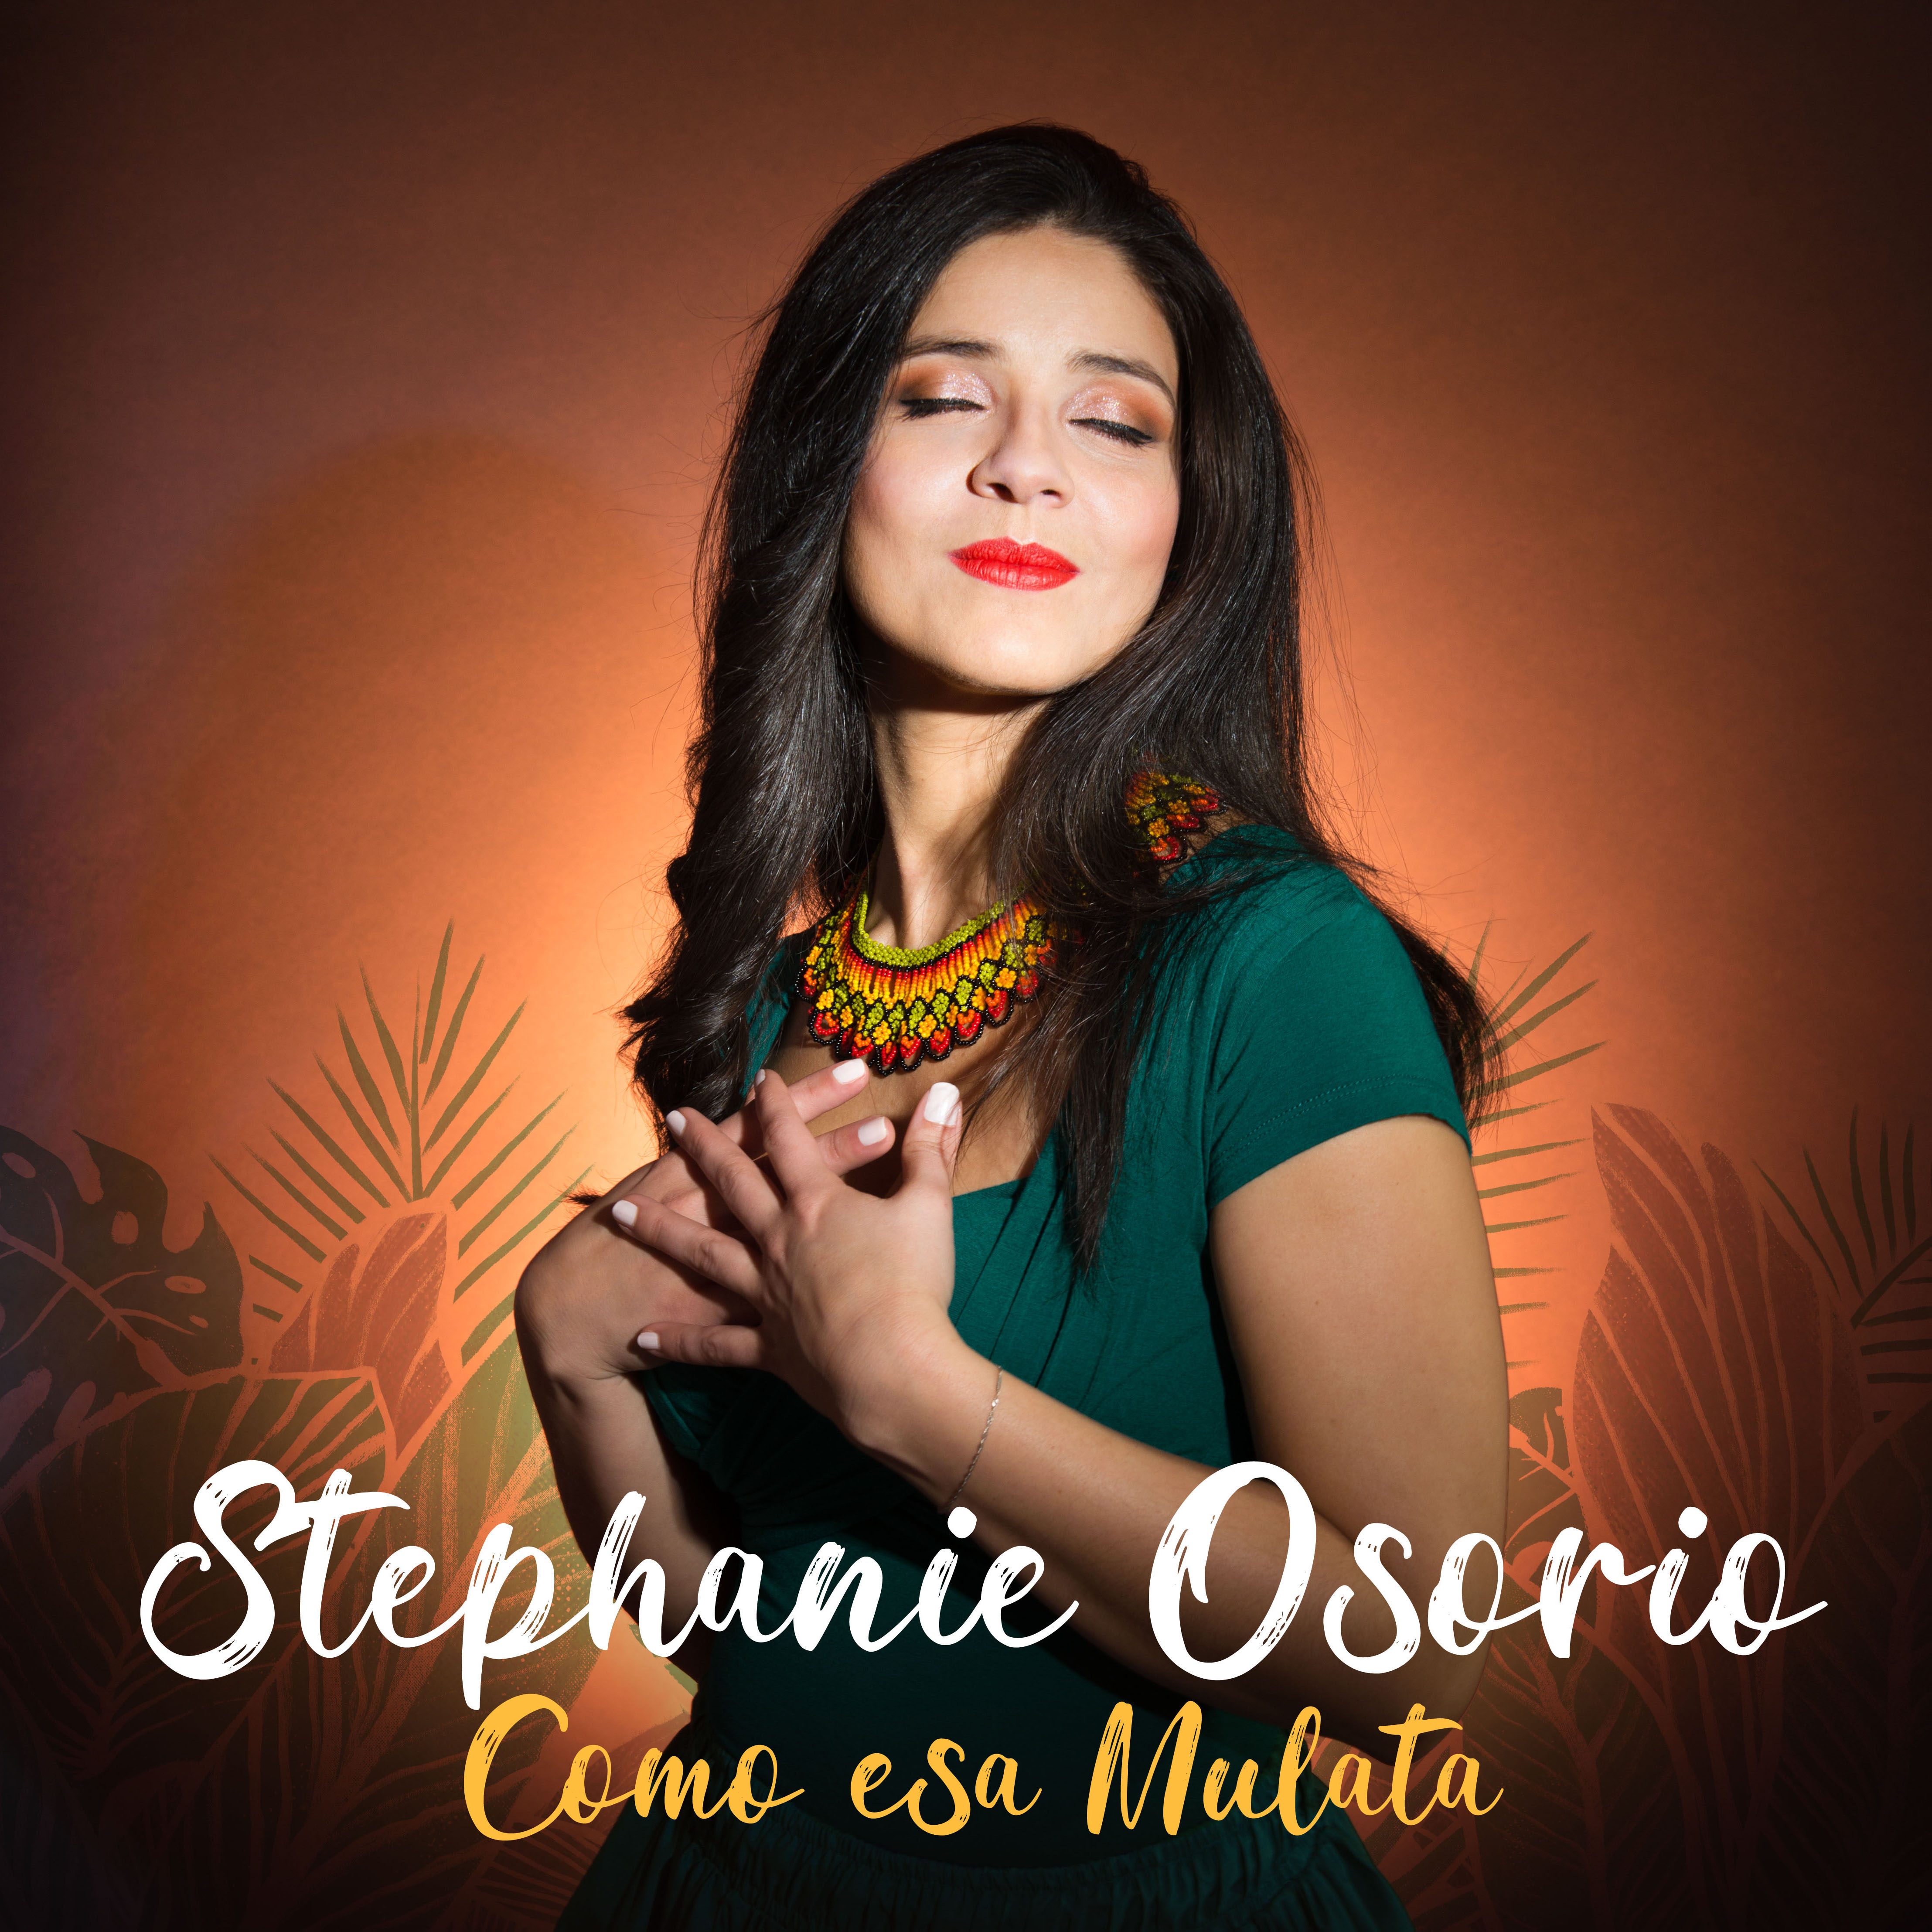 Stephanie Osorio - Como esa Mulata (single)